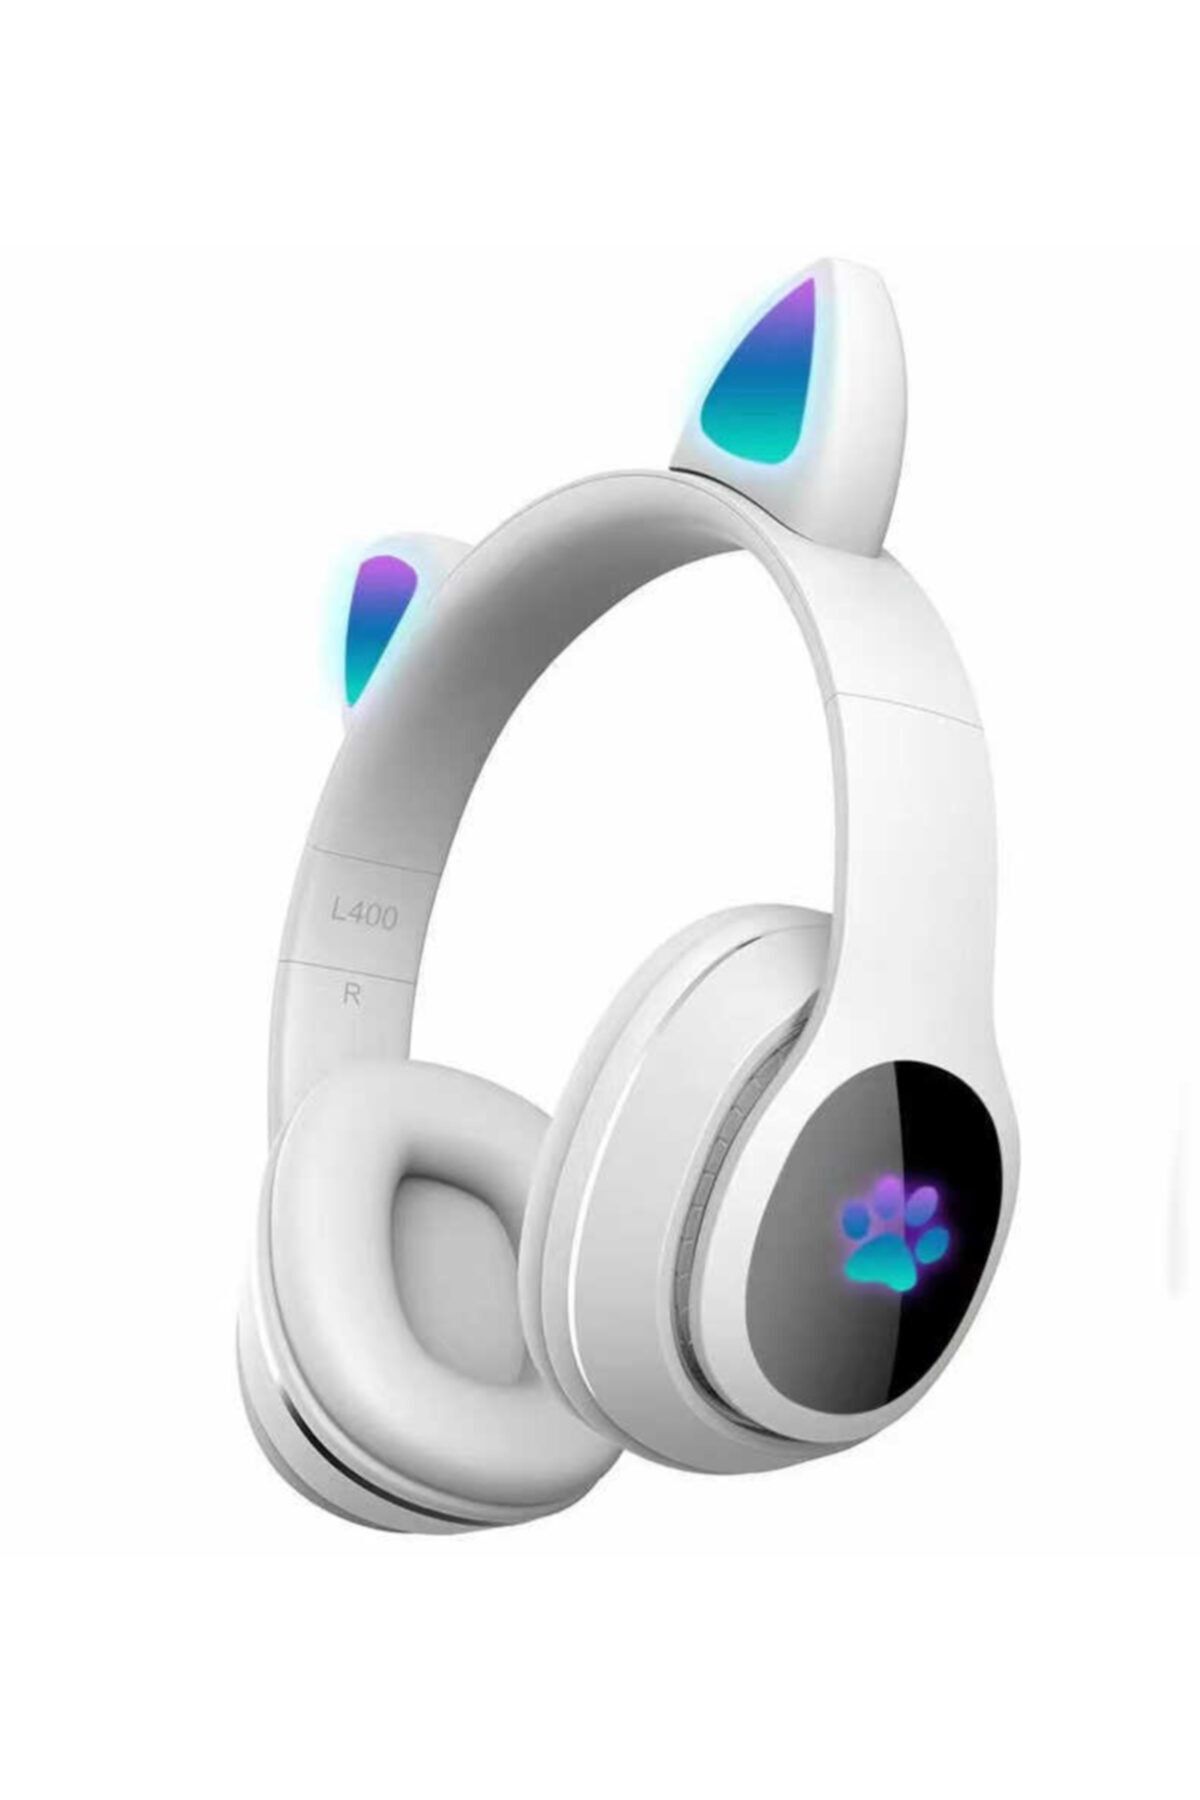 UnDePlus Kulaküstü Bluetooth Kulaklık Rgb Işık Renki Çocuk Kedi L400